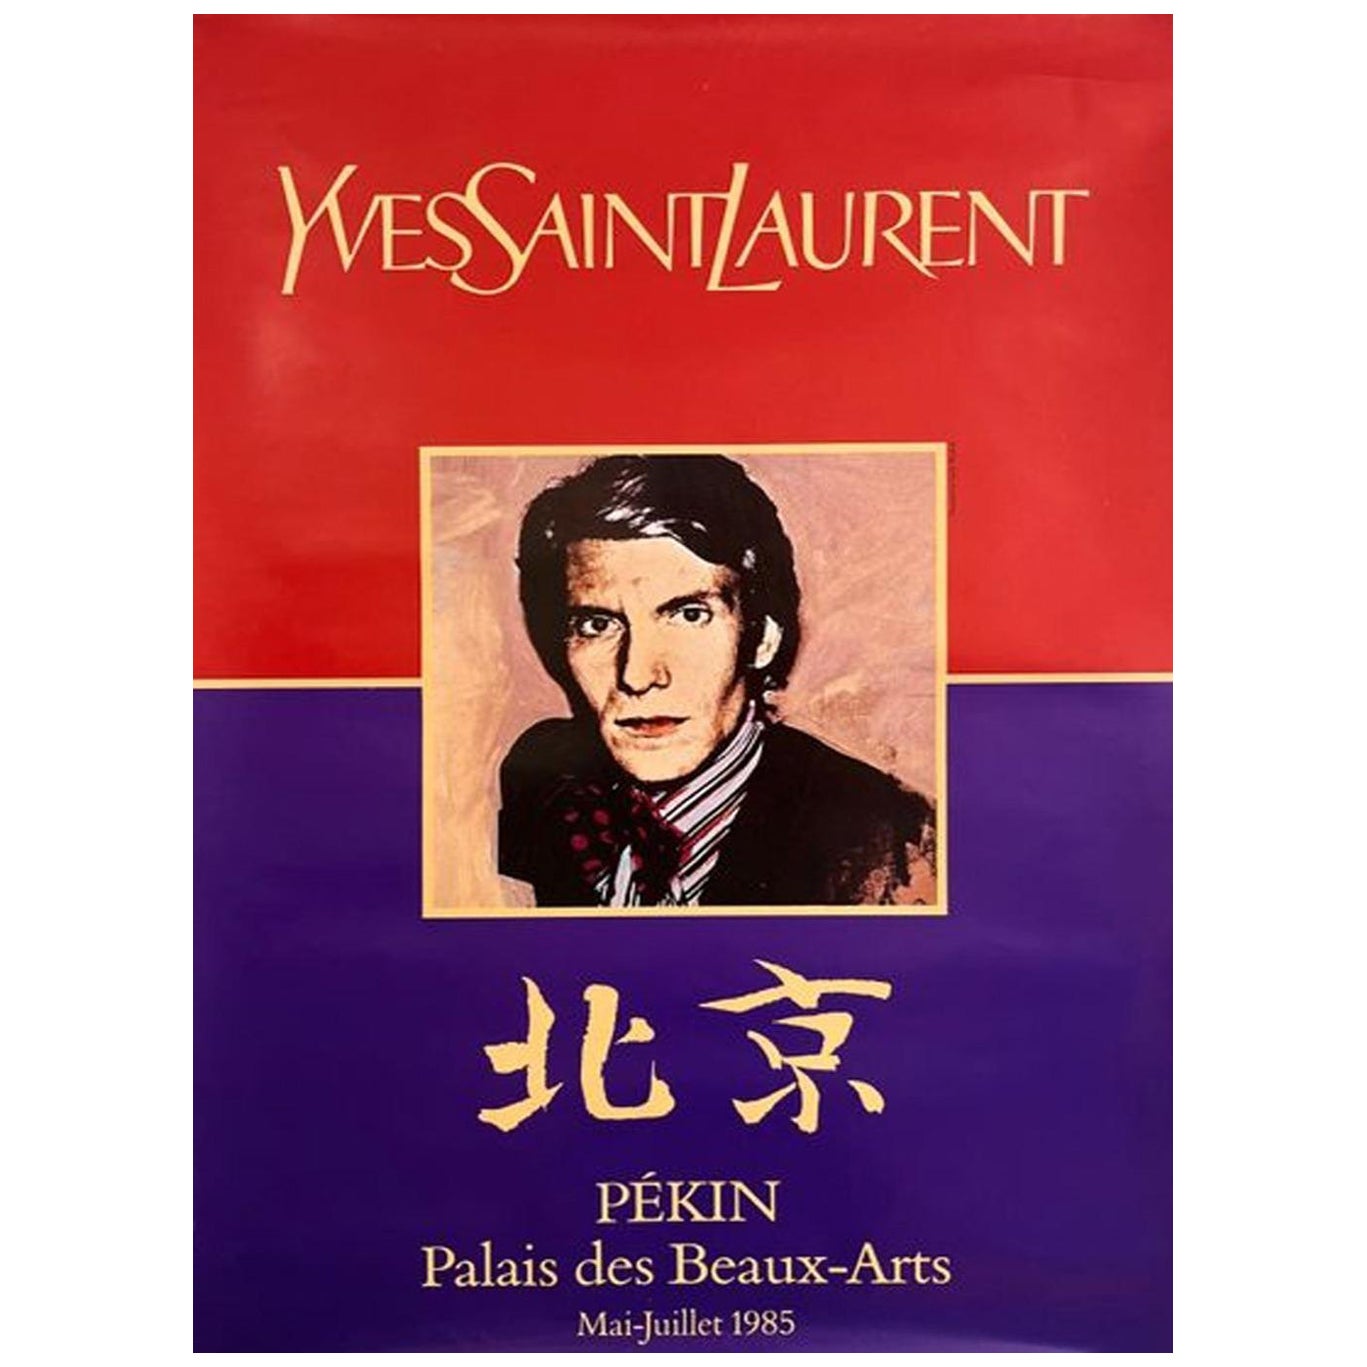 1985 Yves Saint Laurent - Pekin - Palais des Beaux-Arts Original Vintage Poster For Sale